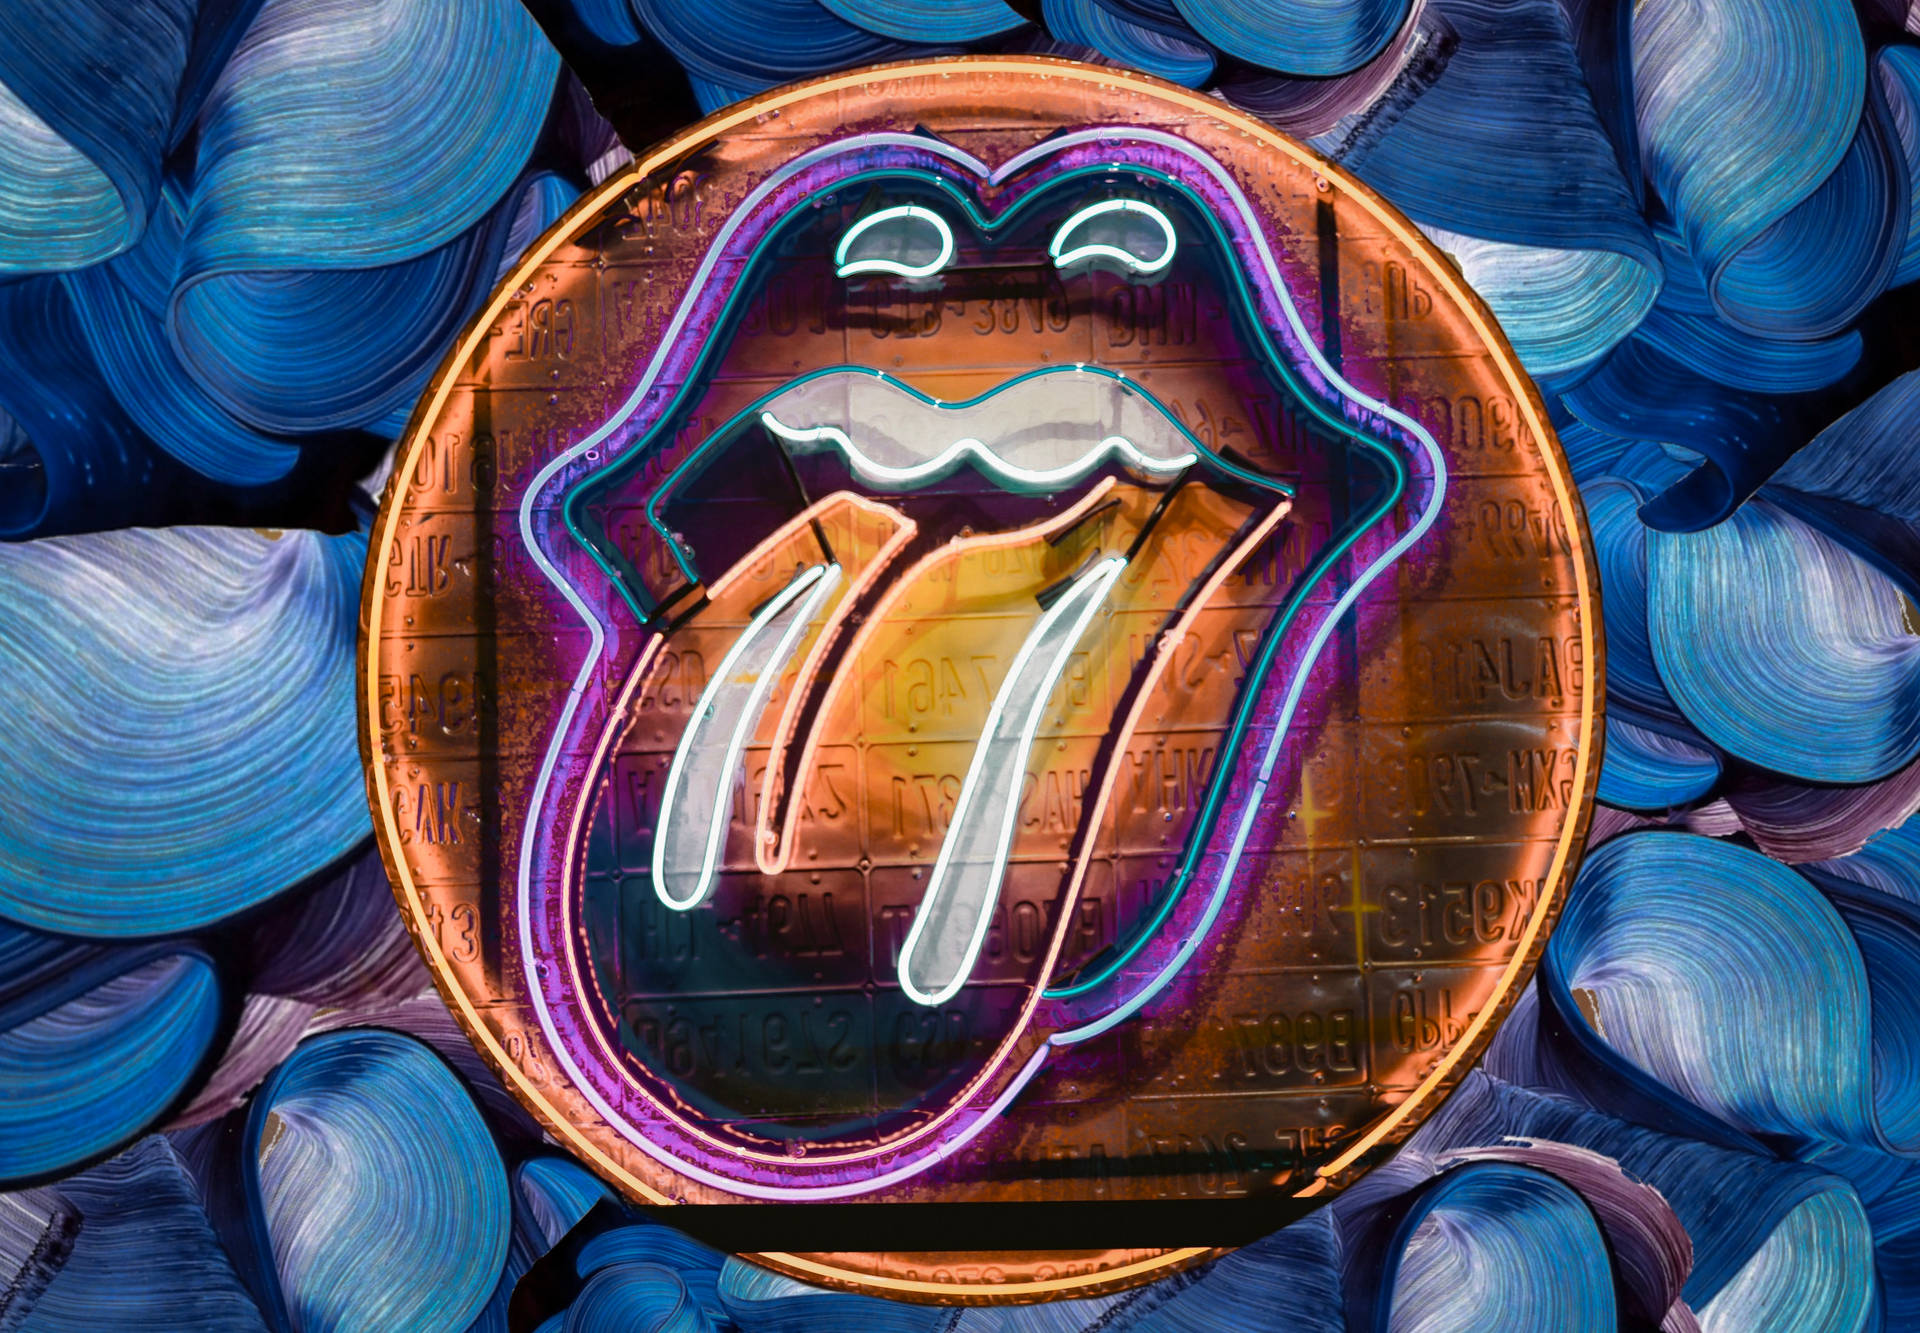 The Rolling Stones Pop Art Wallpaper